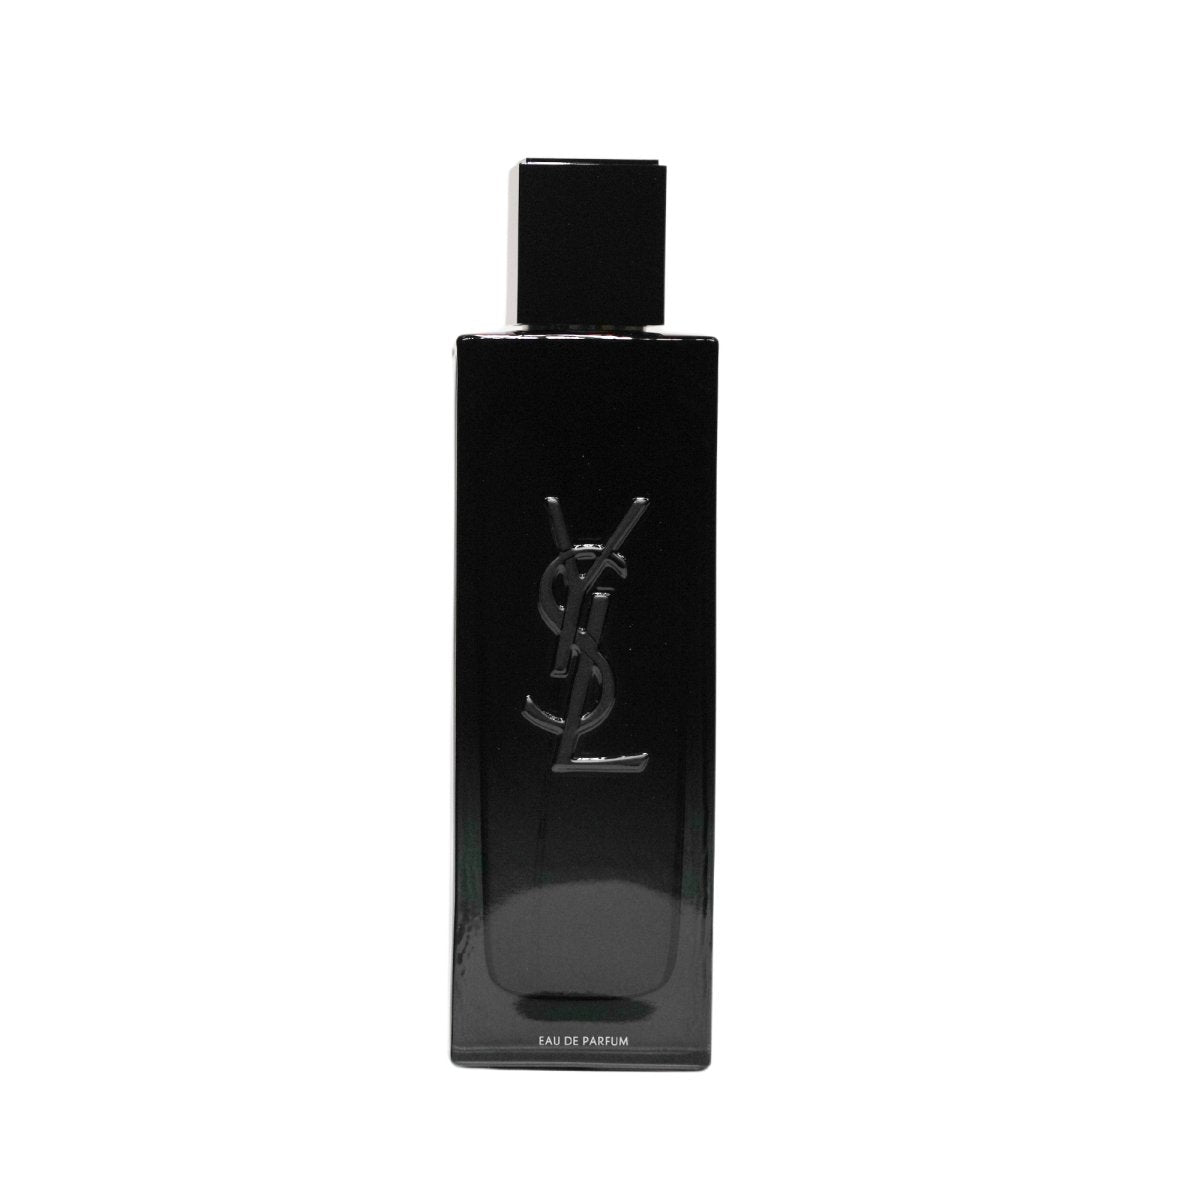  - Yves Saint Laurent - 3.4 oz - Eau de Parfum - Fragrance - 3614273852814 - Fragrance